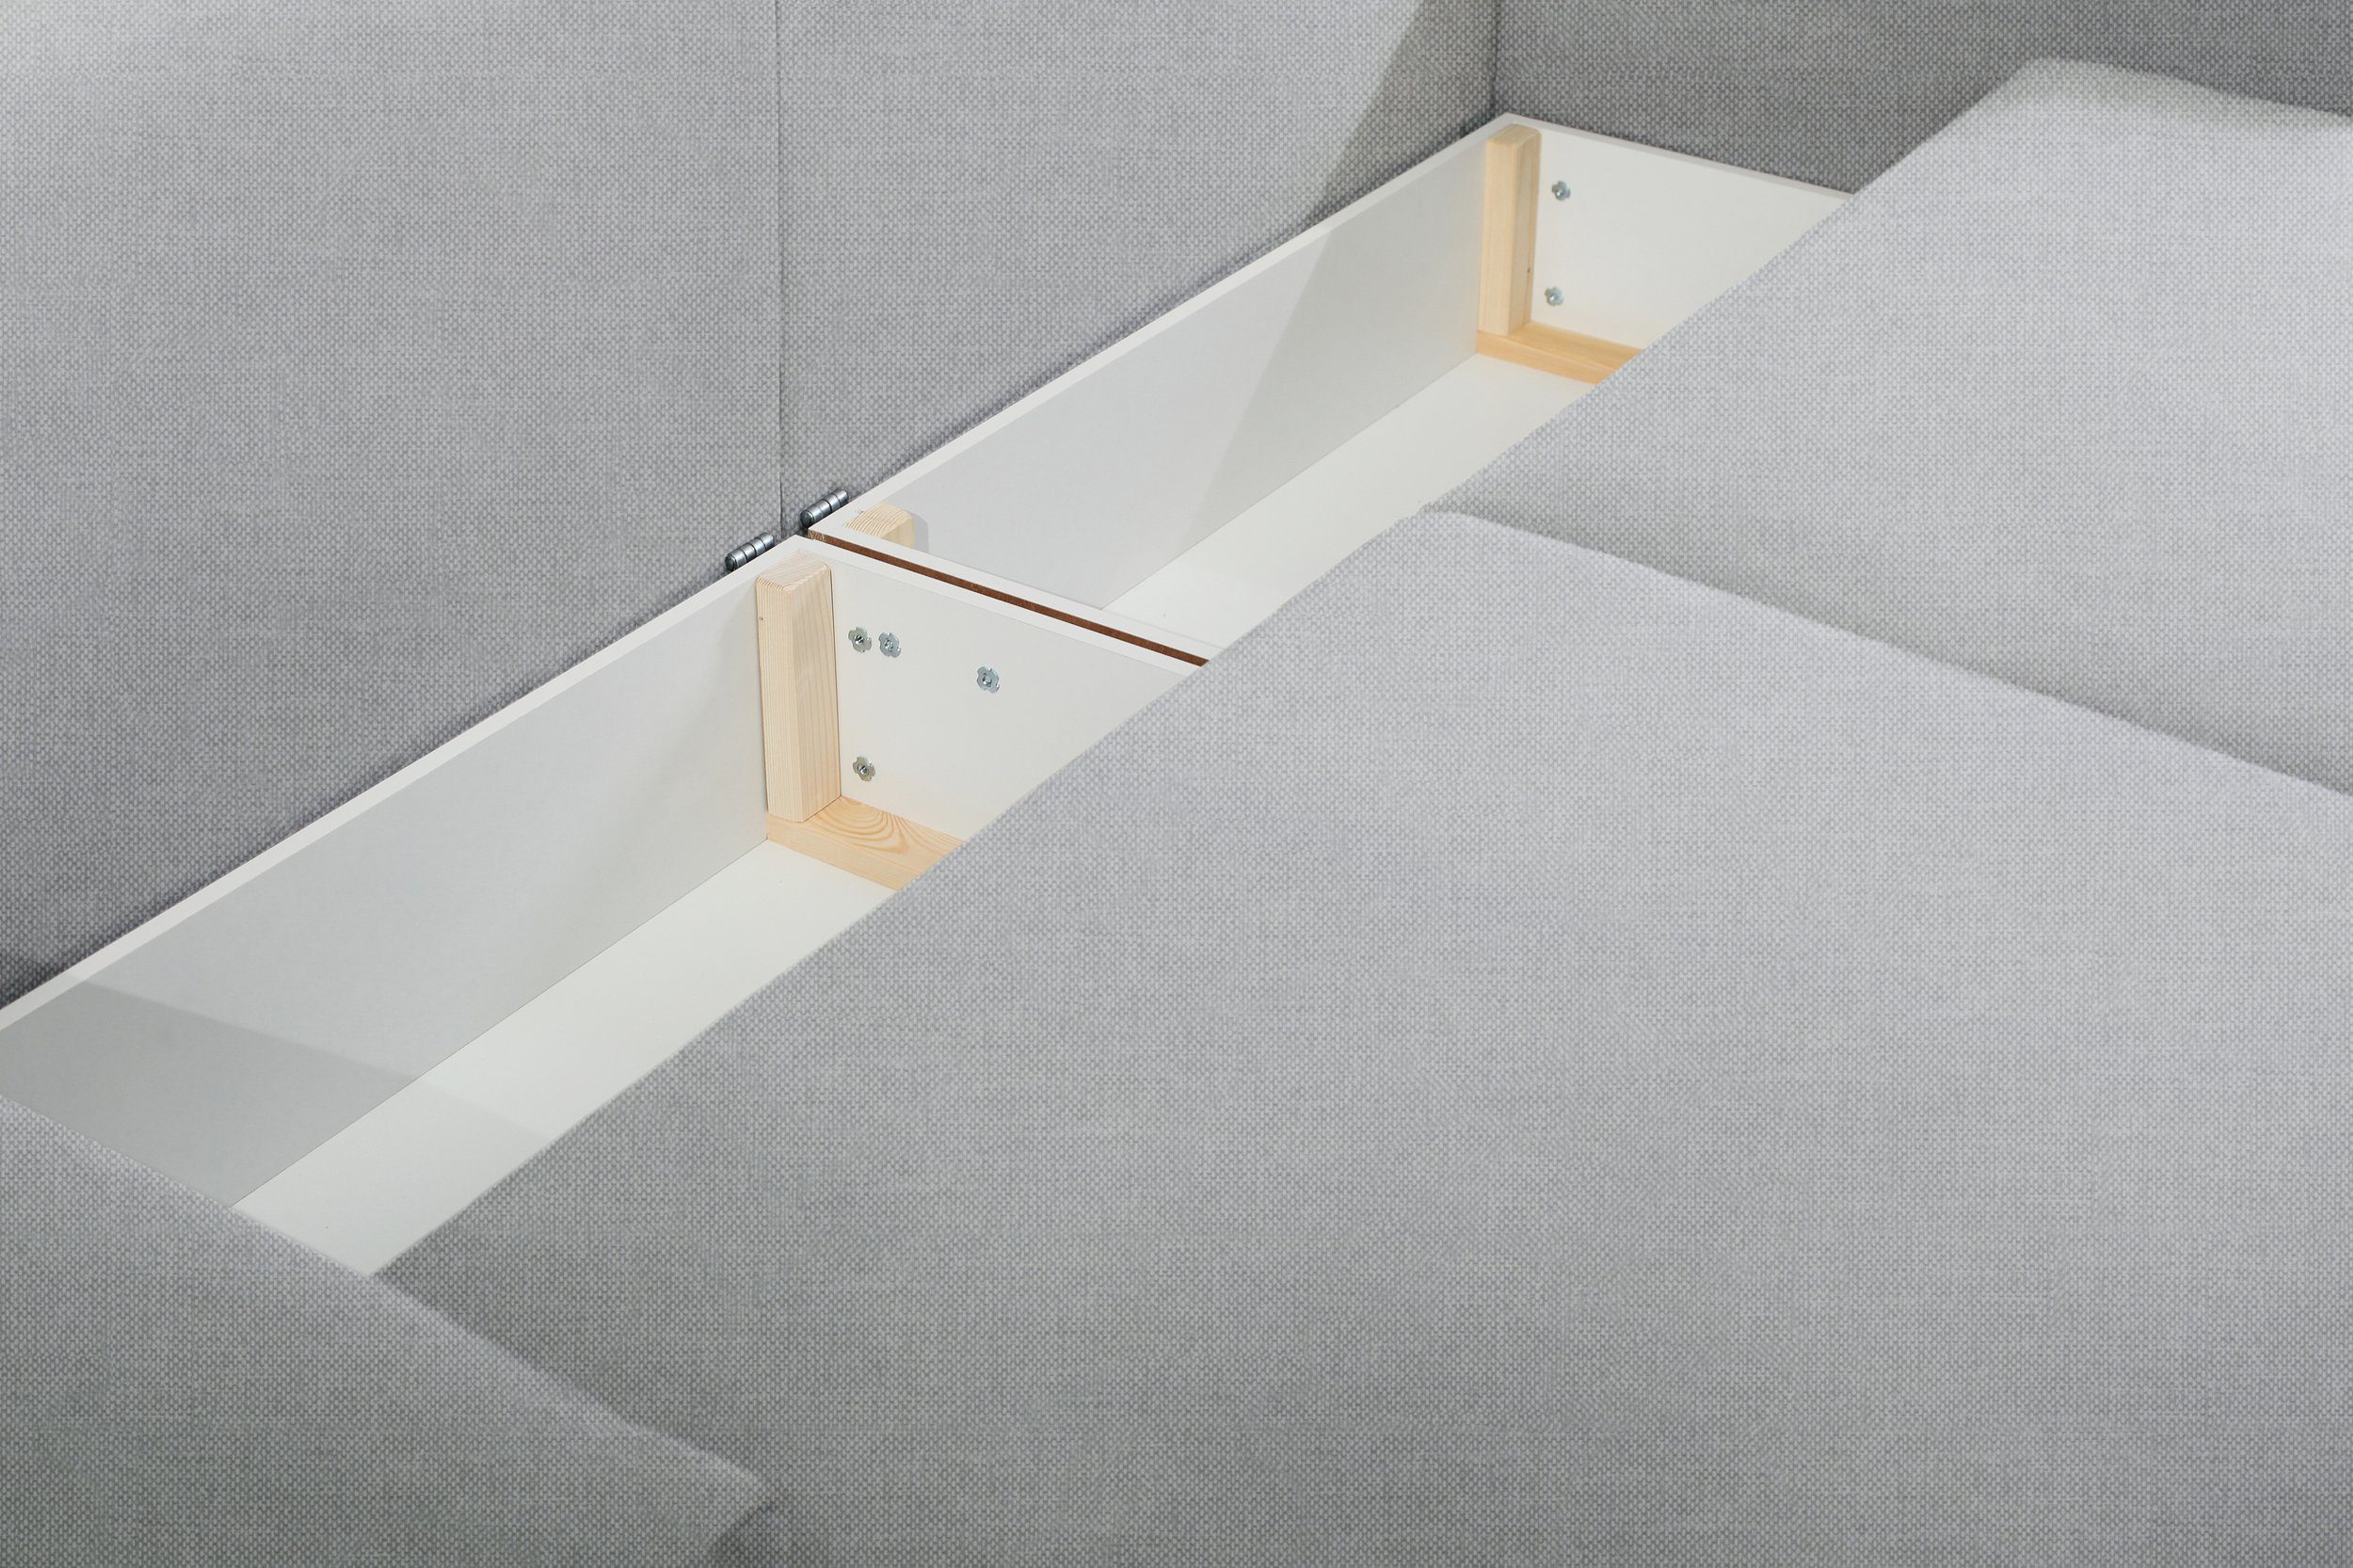 Stylefy 3-Sitzer Korfu, Raum im stellbar, Kissen, Bettfunktion Design, inklusive 2-Sitzer, Sofa, Modern frei mit